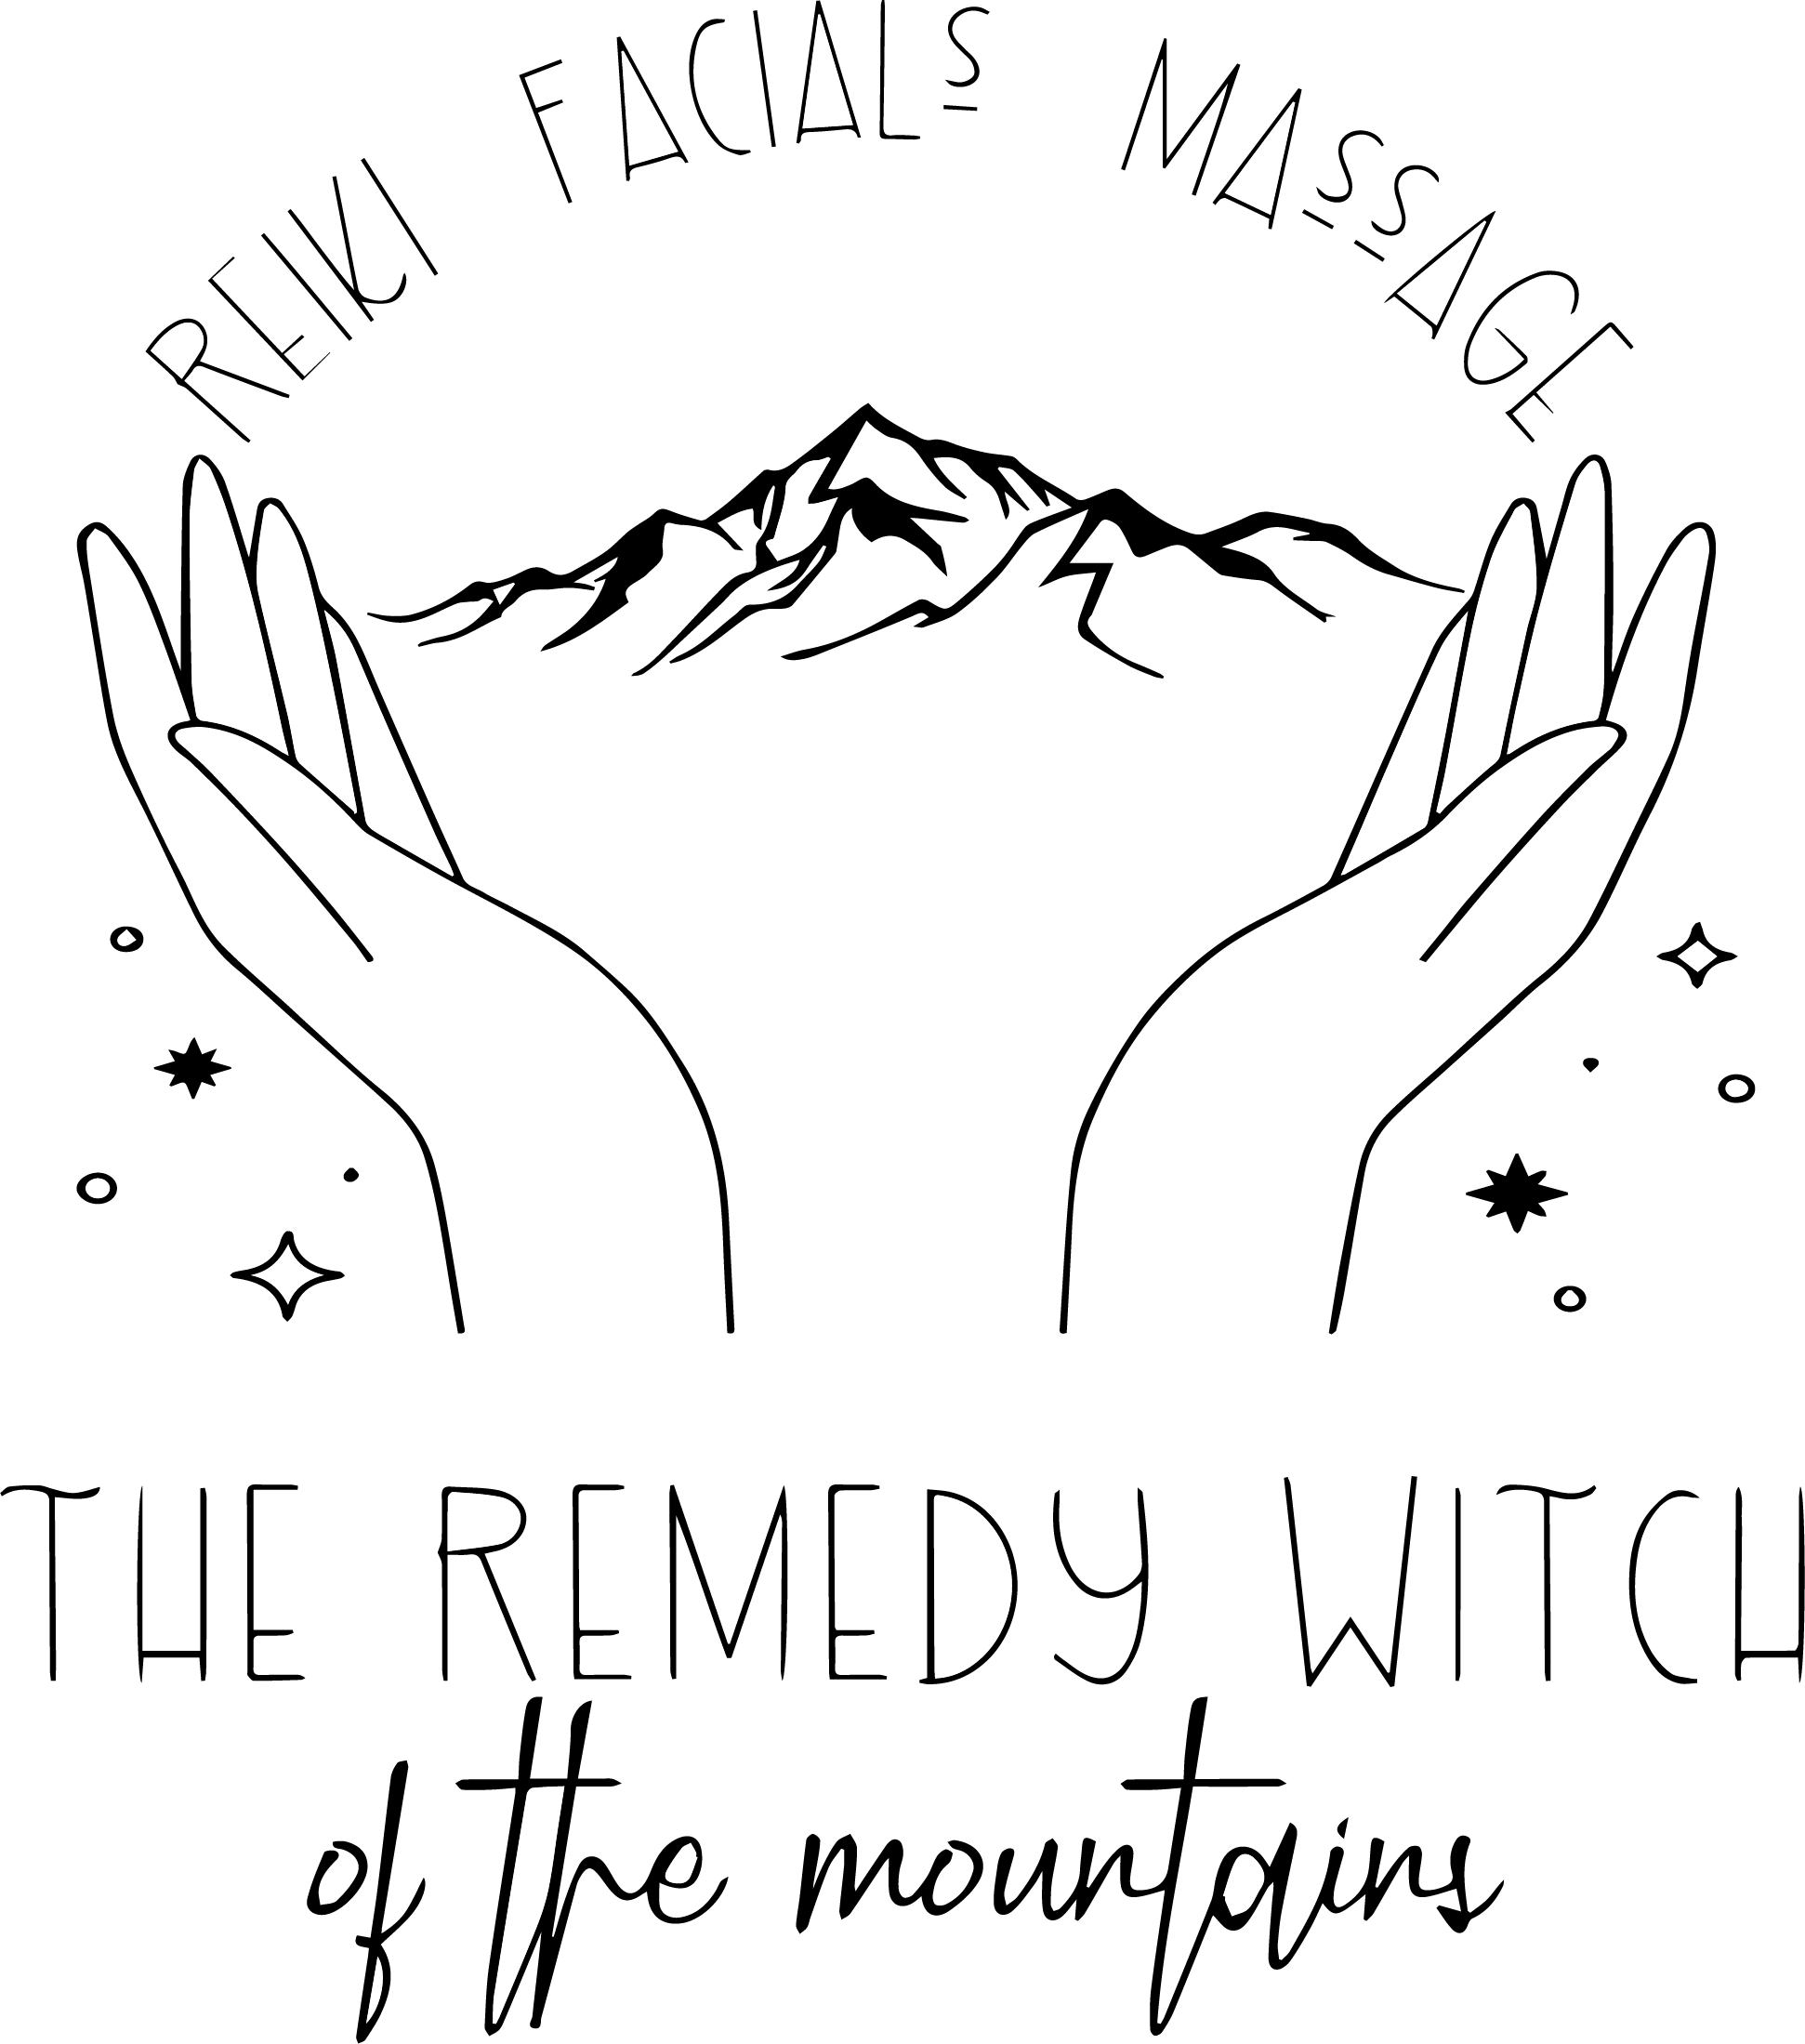 Remedy Witch logo